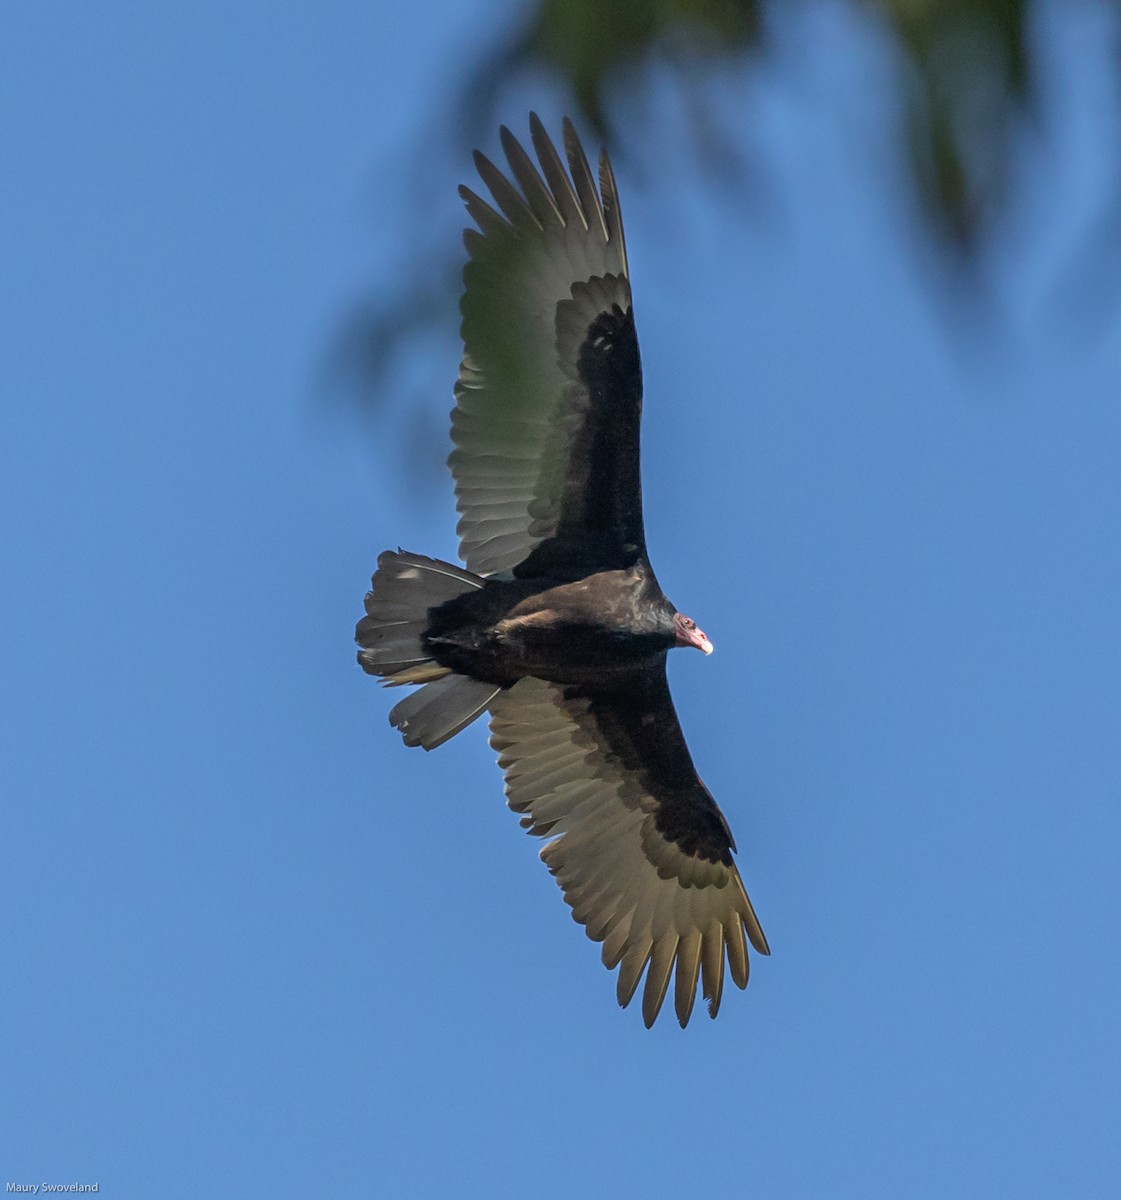 Turkey Vulture - Maury Swoveland